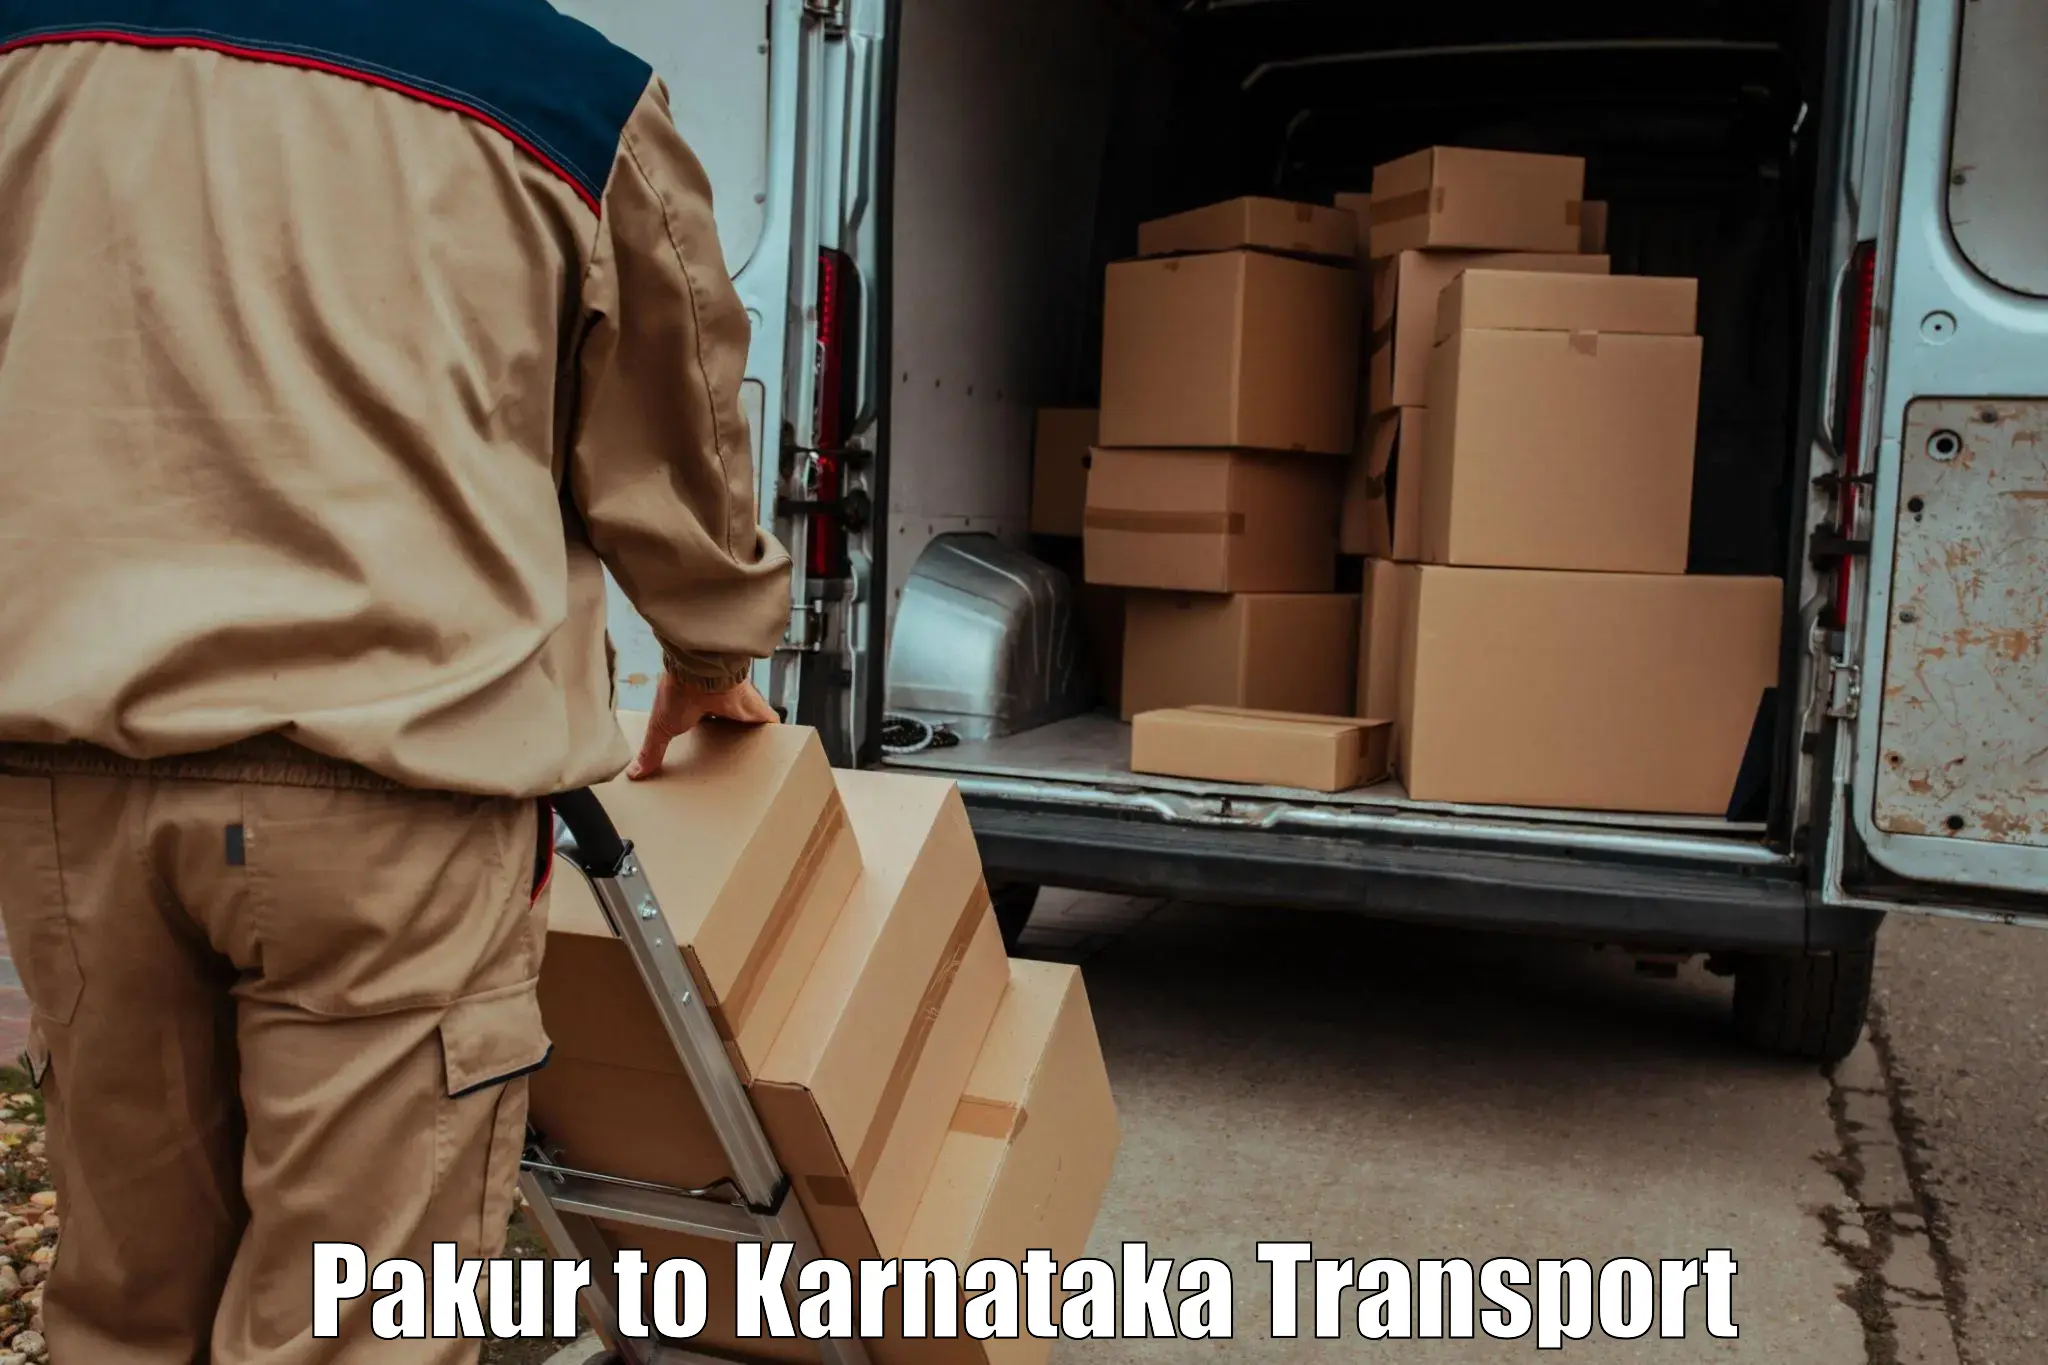 Truck transport companies in India Pakur to Bidar